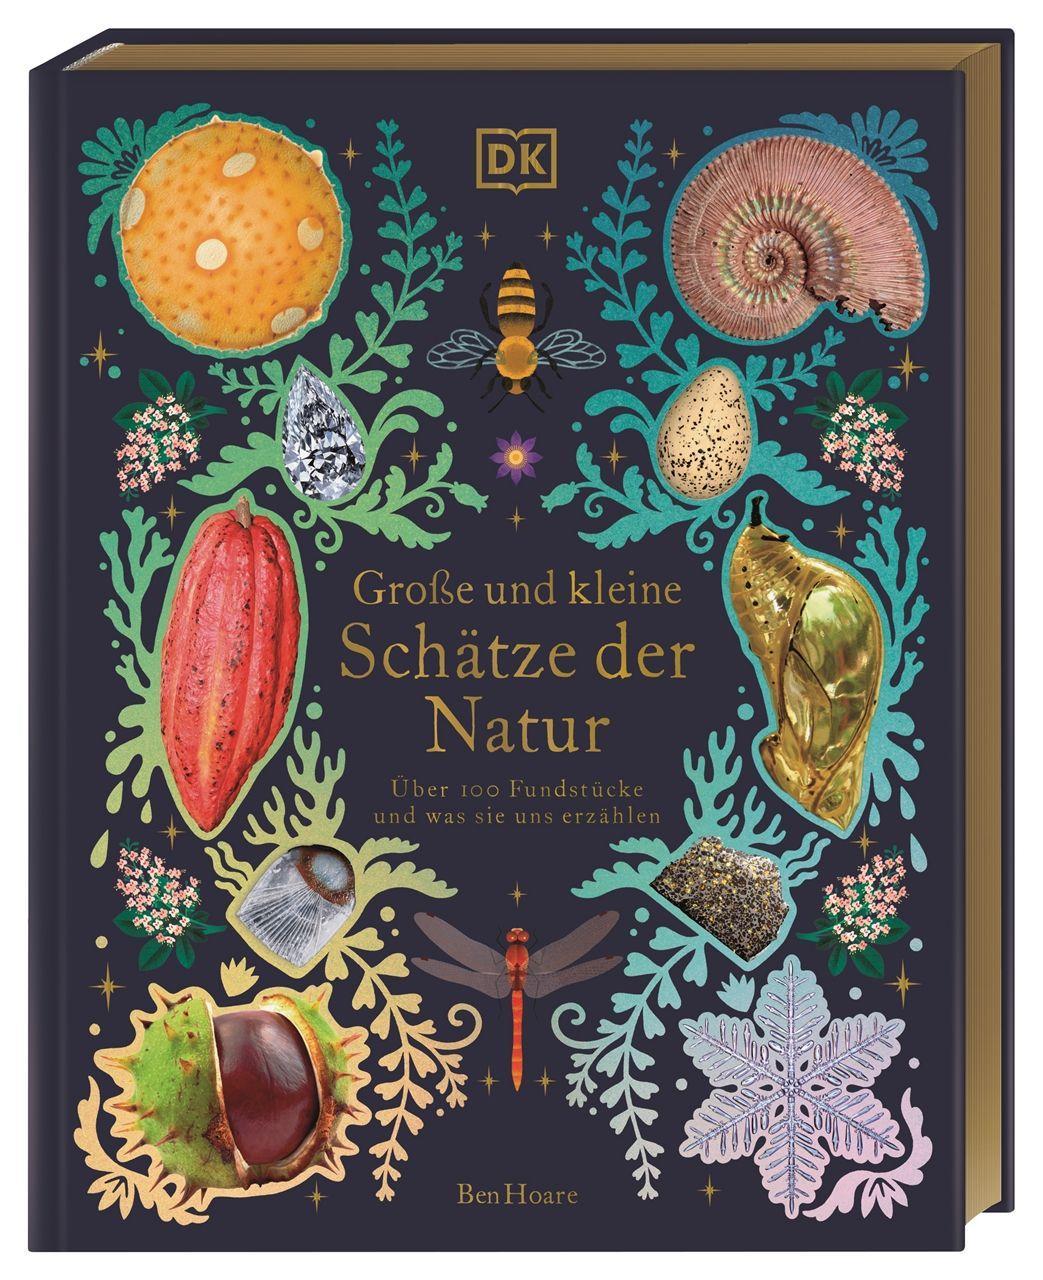 Kniha Große und kleine Schätze der Natur. Große und kleine Schätze der Natur Kaley McKean